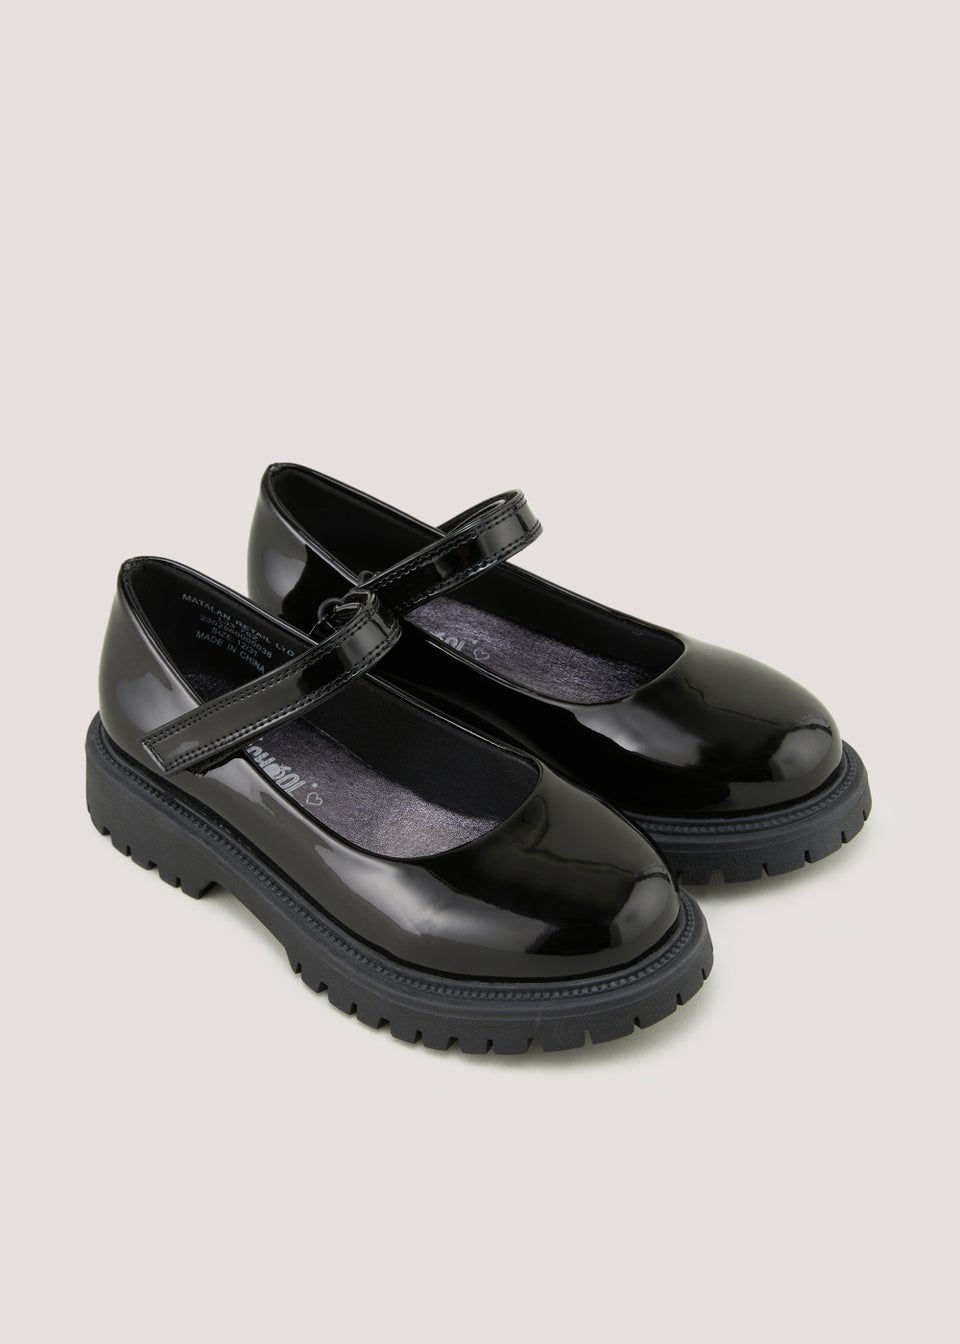 Черные лакированные массивные школьные туфли для девочек (до 10 лет – от 5 лет) черные лакированные массивные школьные туфли для девочек до 10 лет – от 5 лет